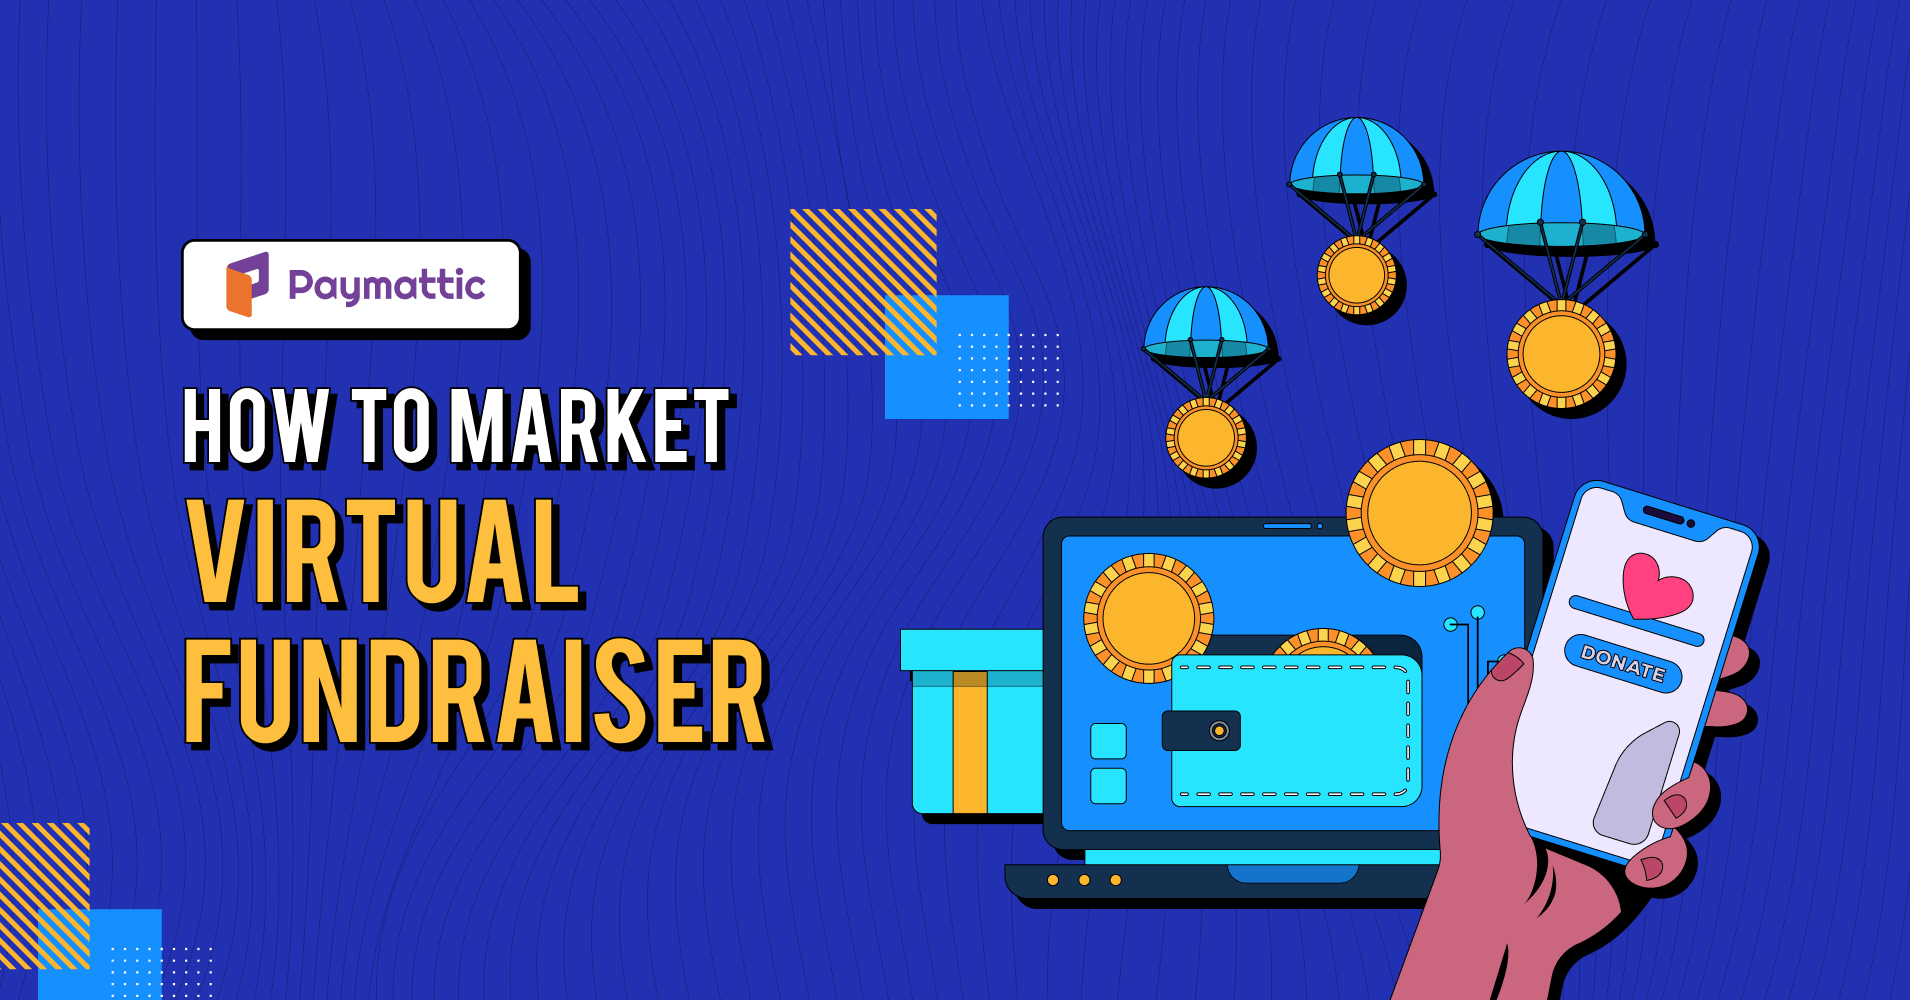 Market virtual fundraiser